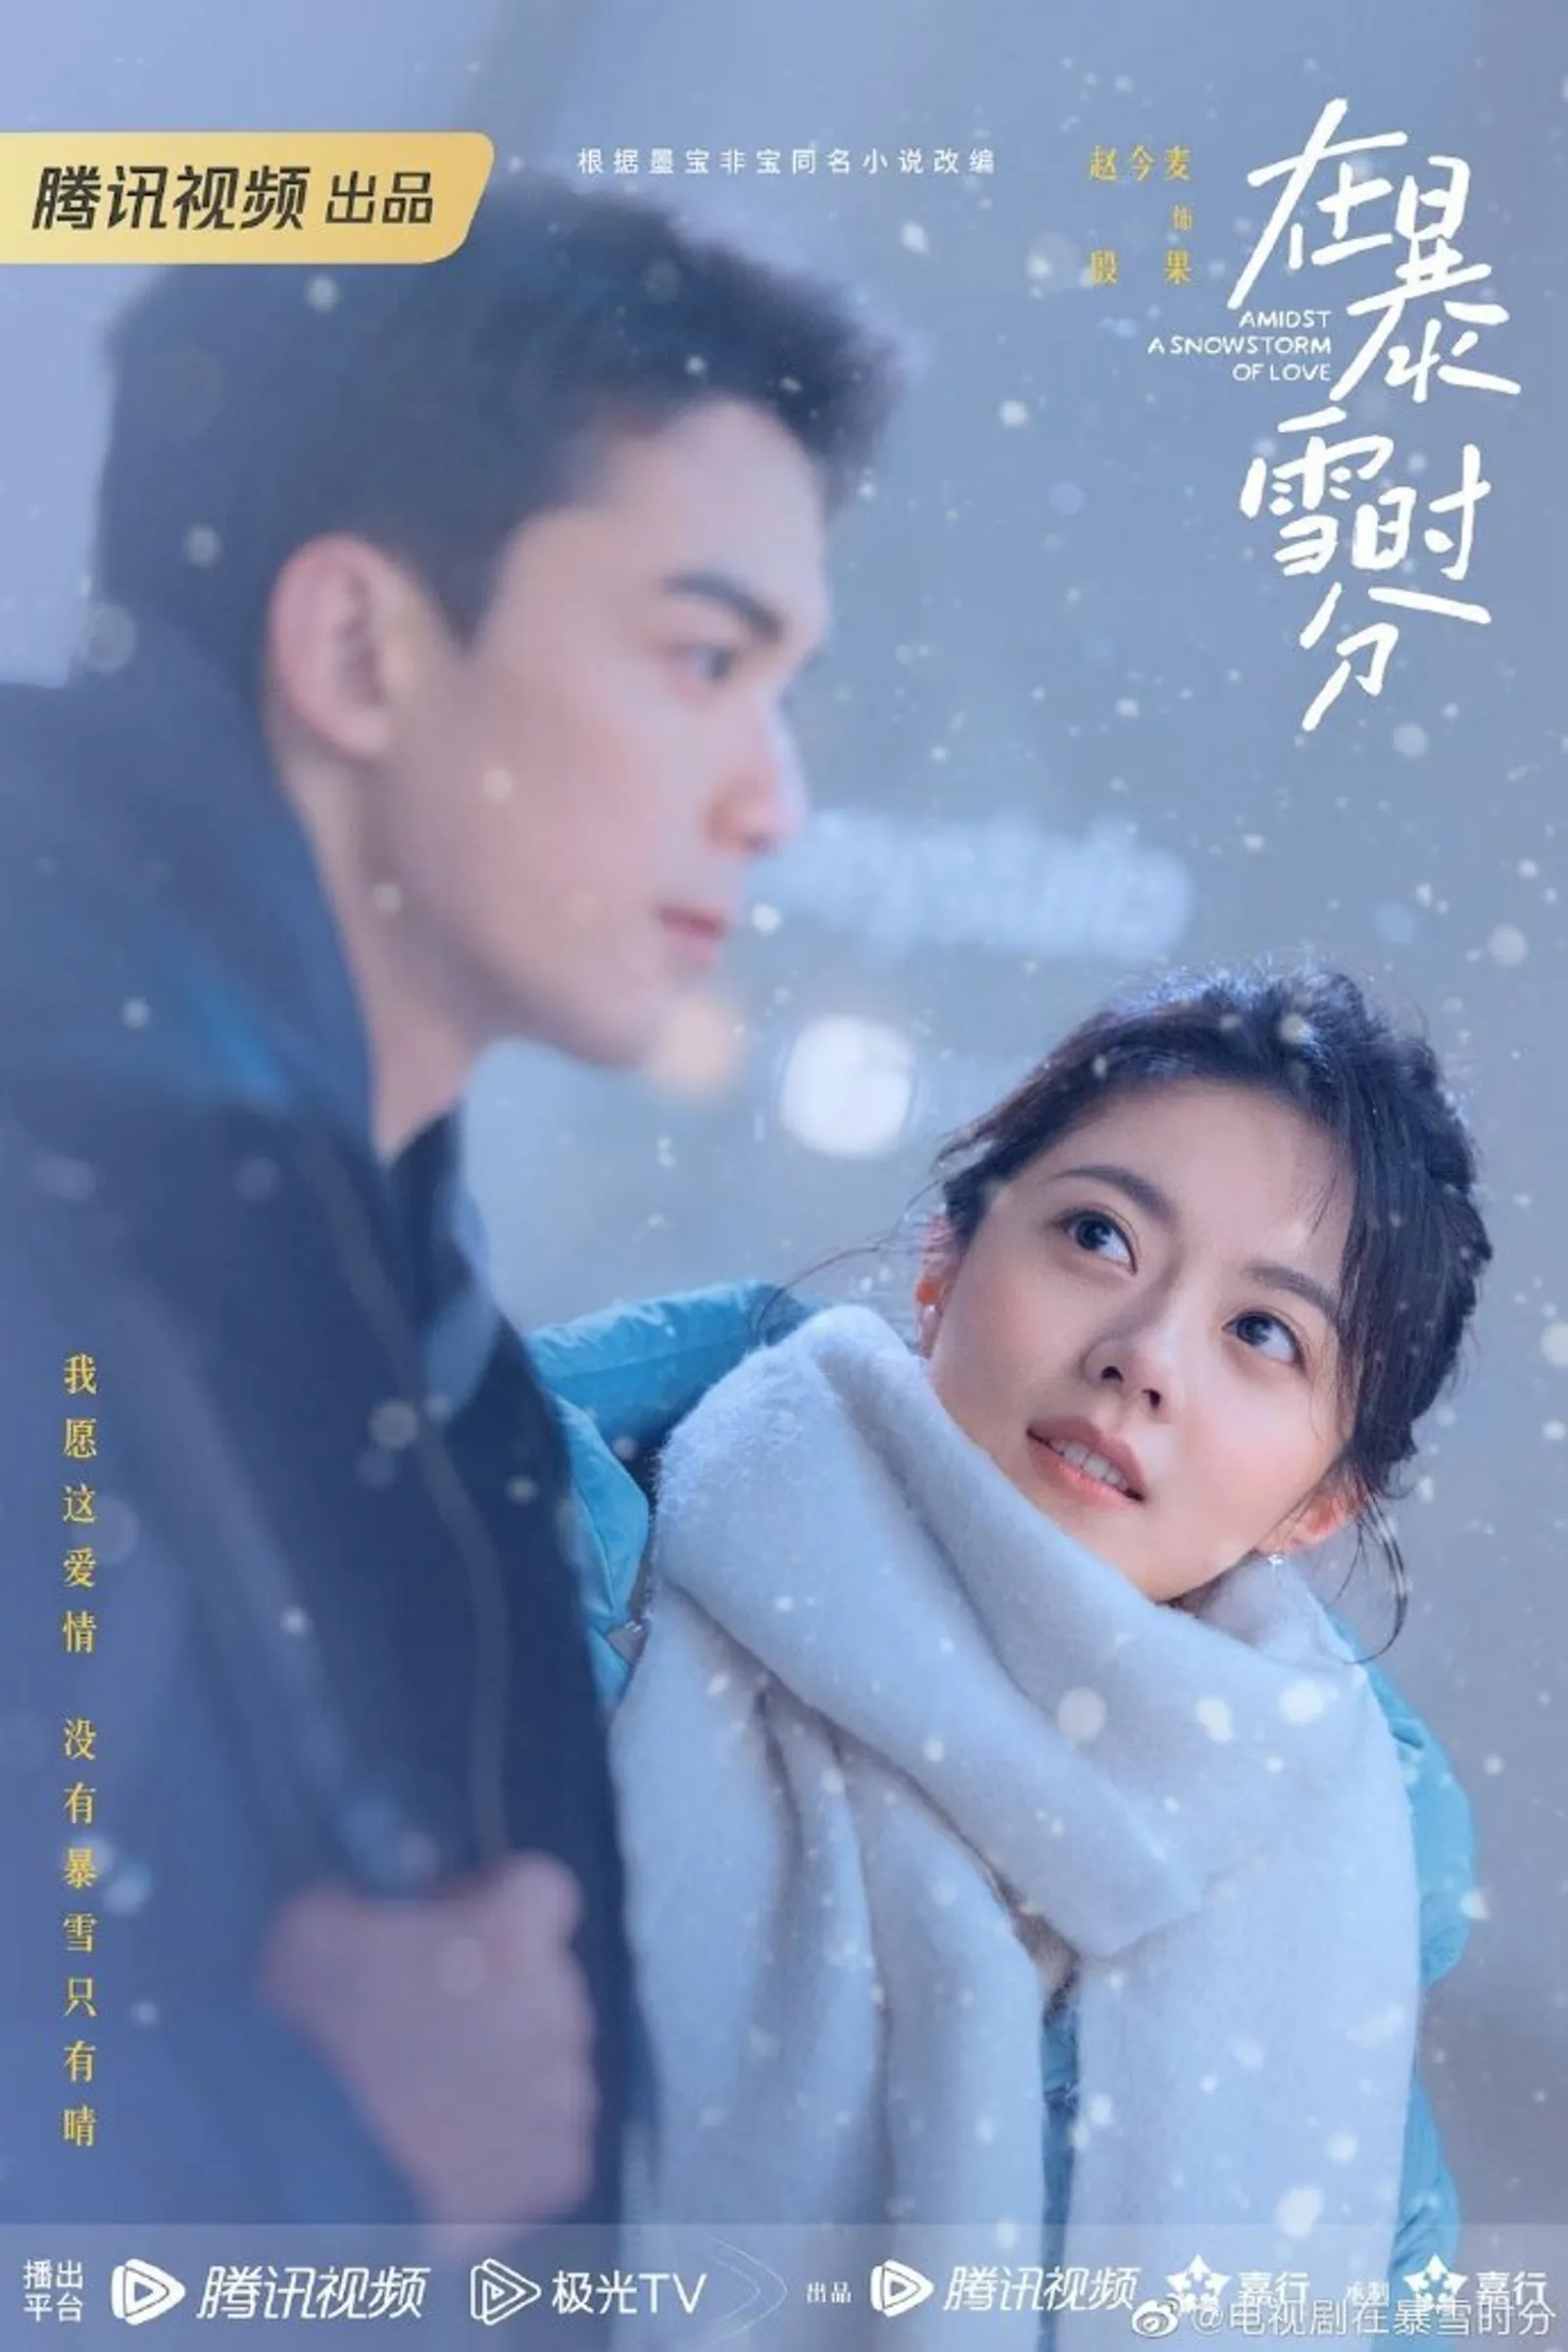 Profil Zhao Jinmai, Pemeran Yin Guo di 'Amidst a Snowstorm of Love'